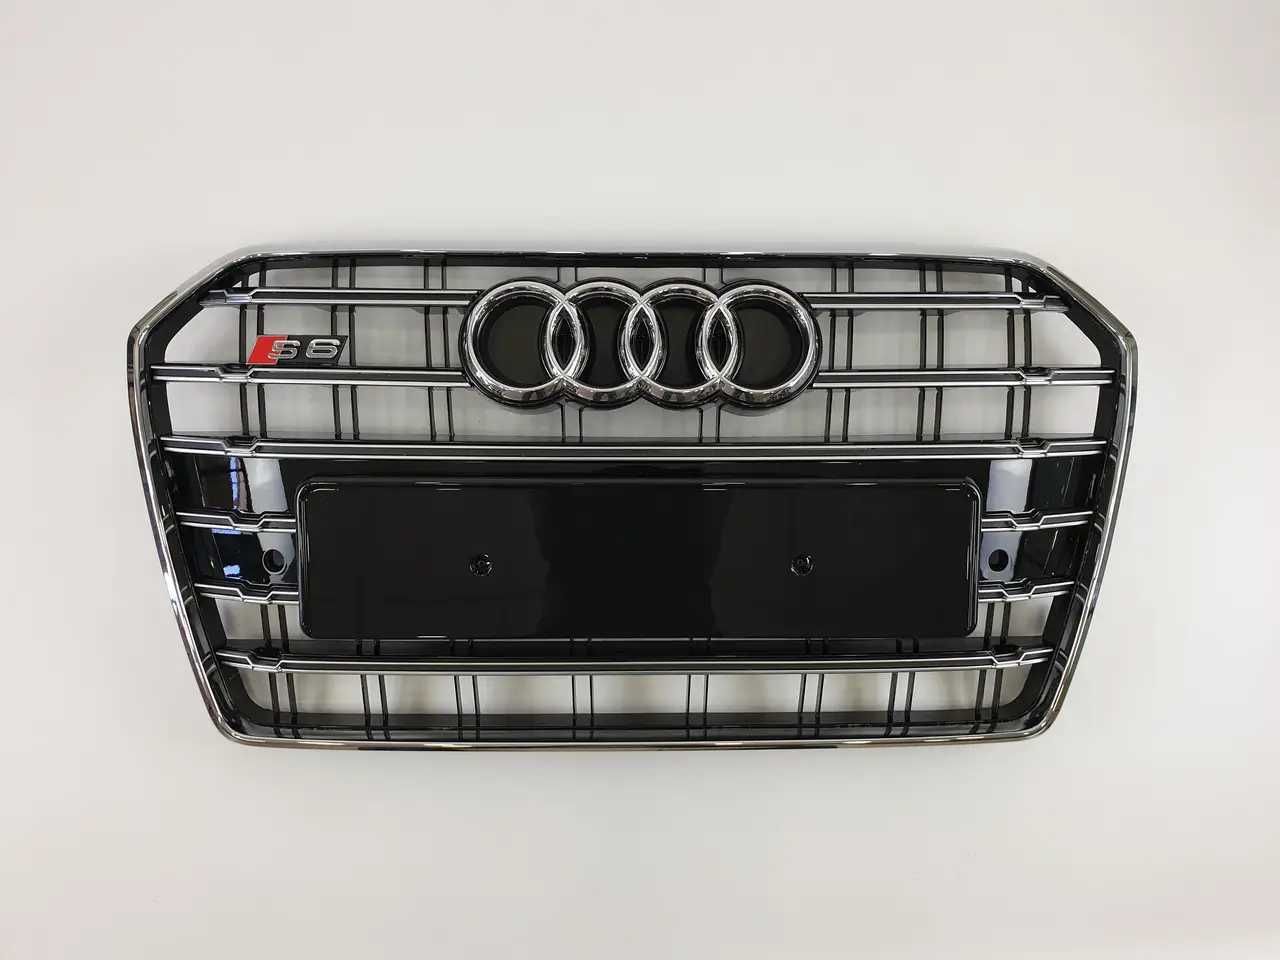 Решетка ауди a6 с7 решотка радиатора на Audi A6 2014-2018 г в стиле S6